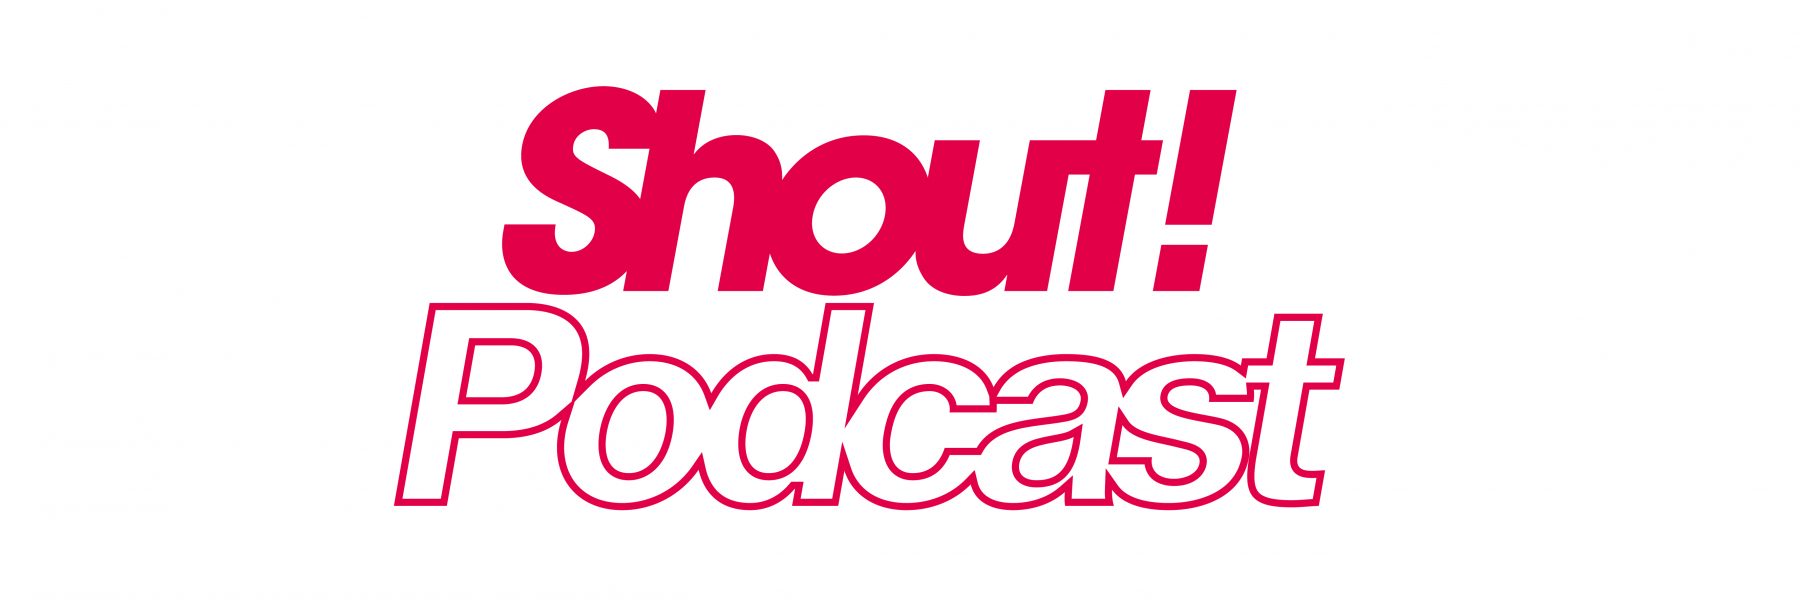 FFC_Shout!Pocast logo Pos v1 2lines-01